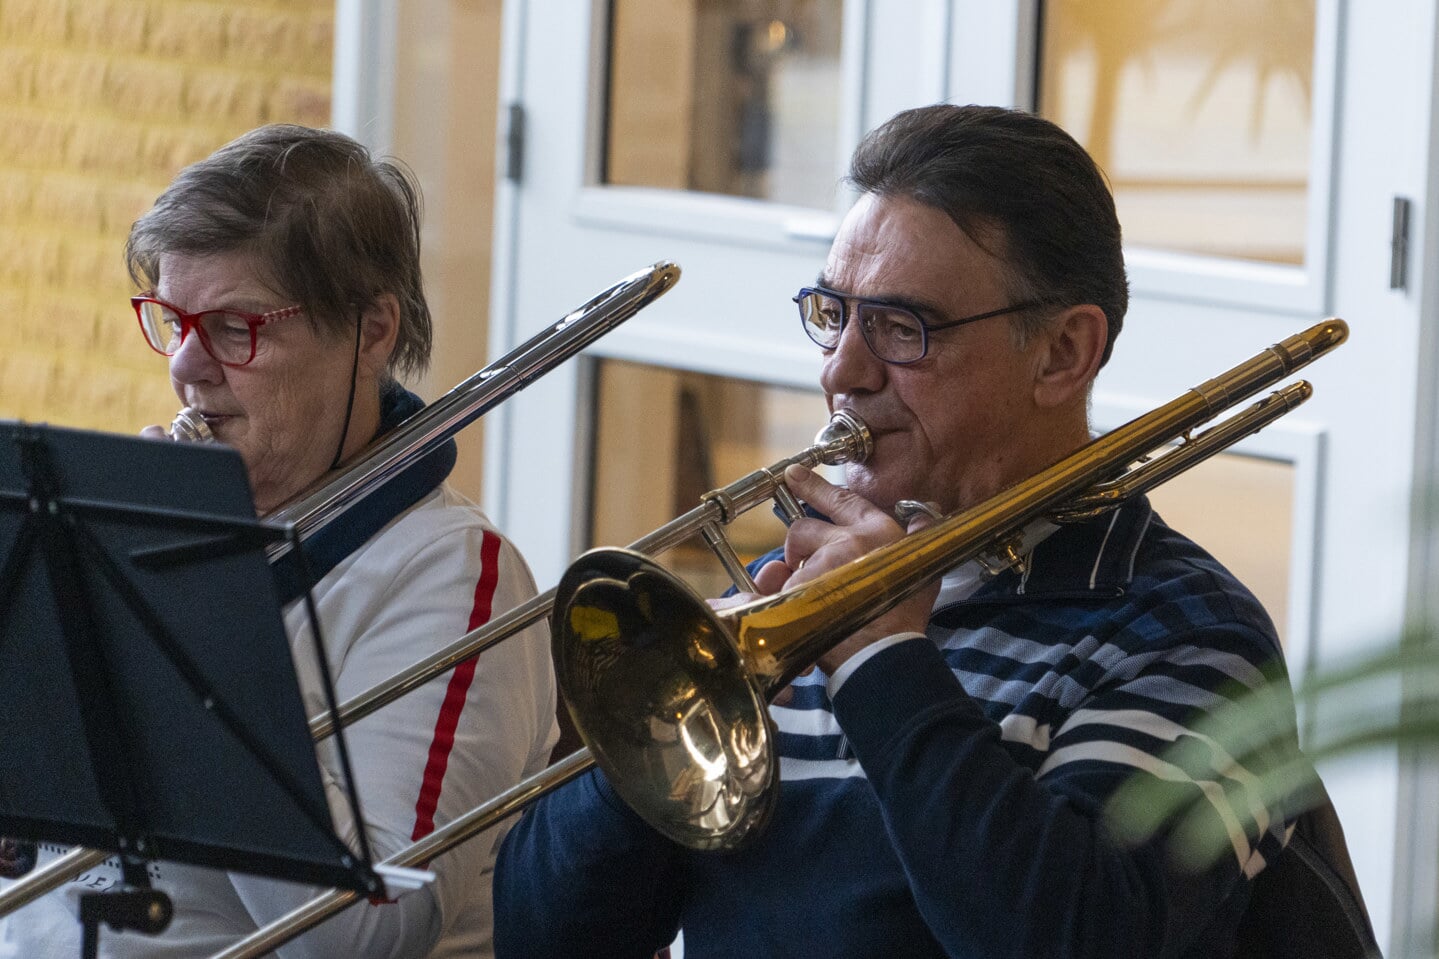 Muzikanten spelen zich warm voor Concert Carnavaleske.